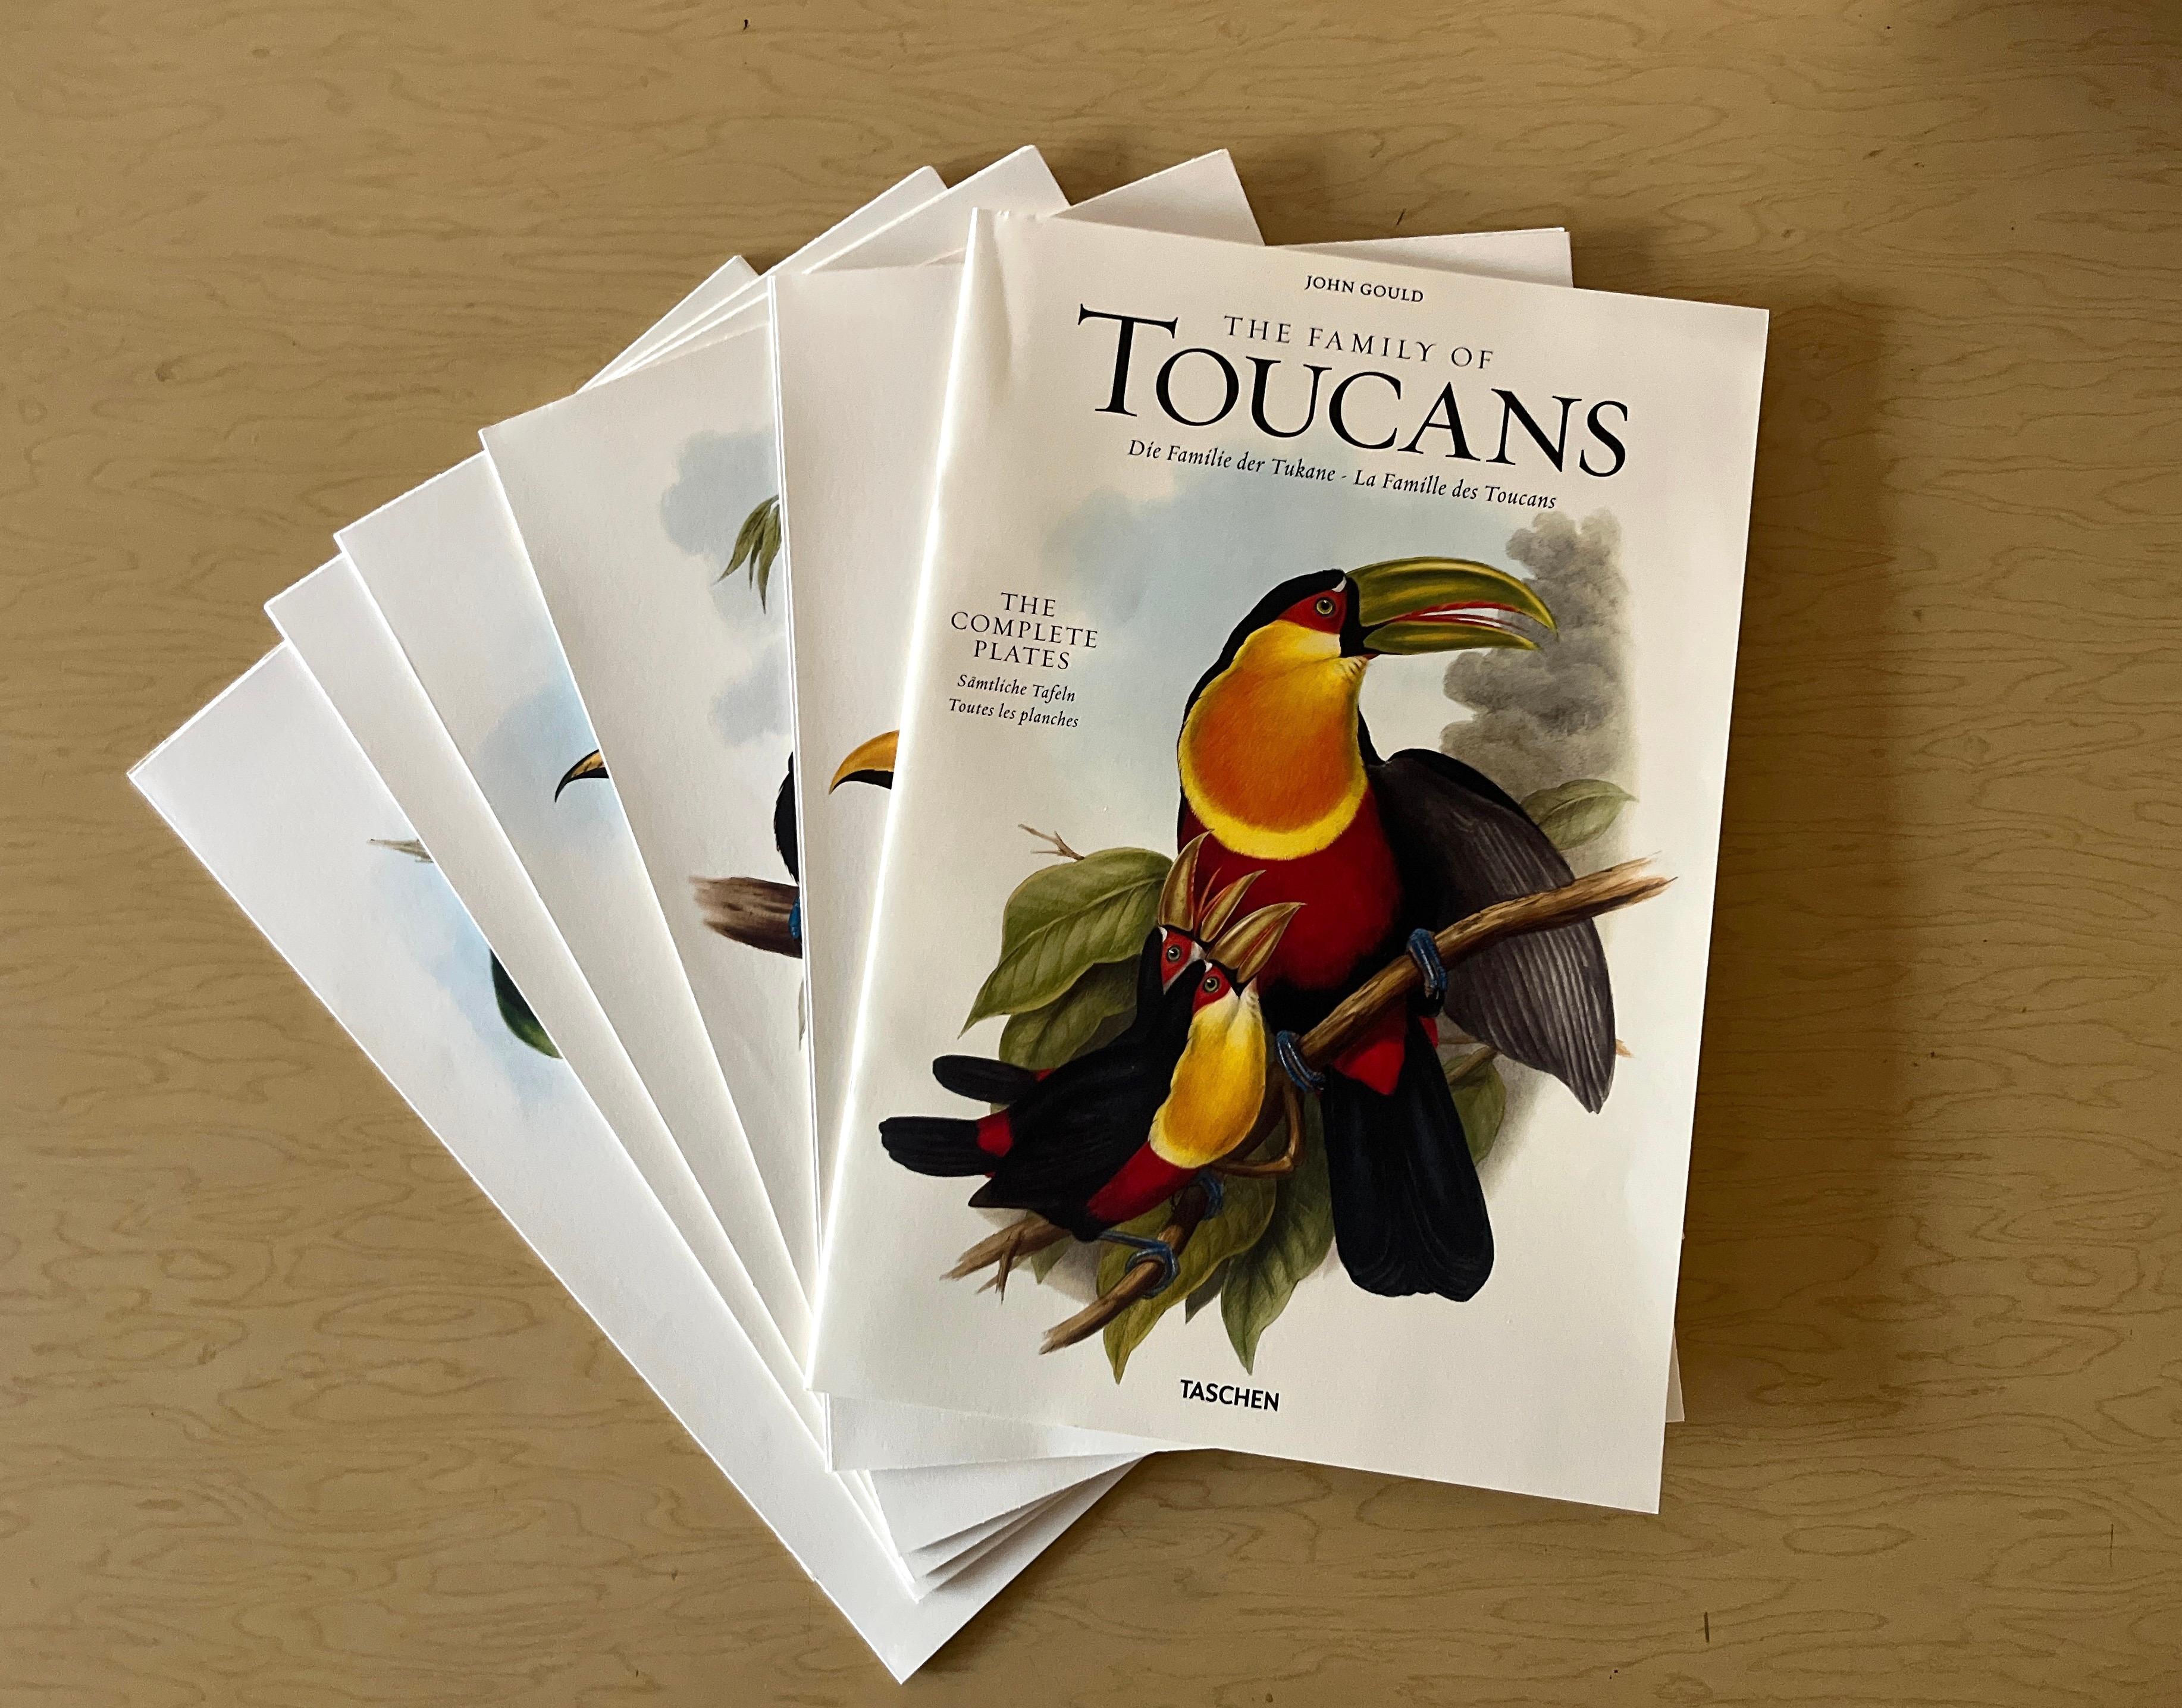 The Family of Toucans: The Complete Plates von John Gould, Pub. von Taschen, 2011 (amerikanisch) im Angebot